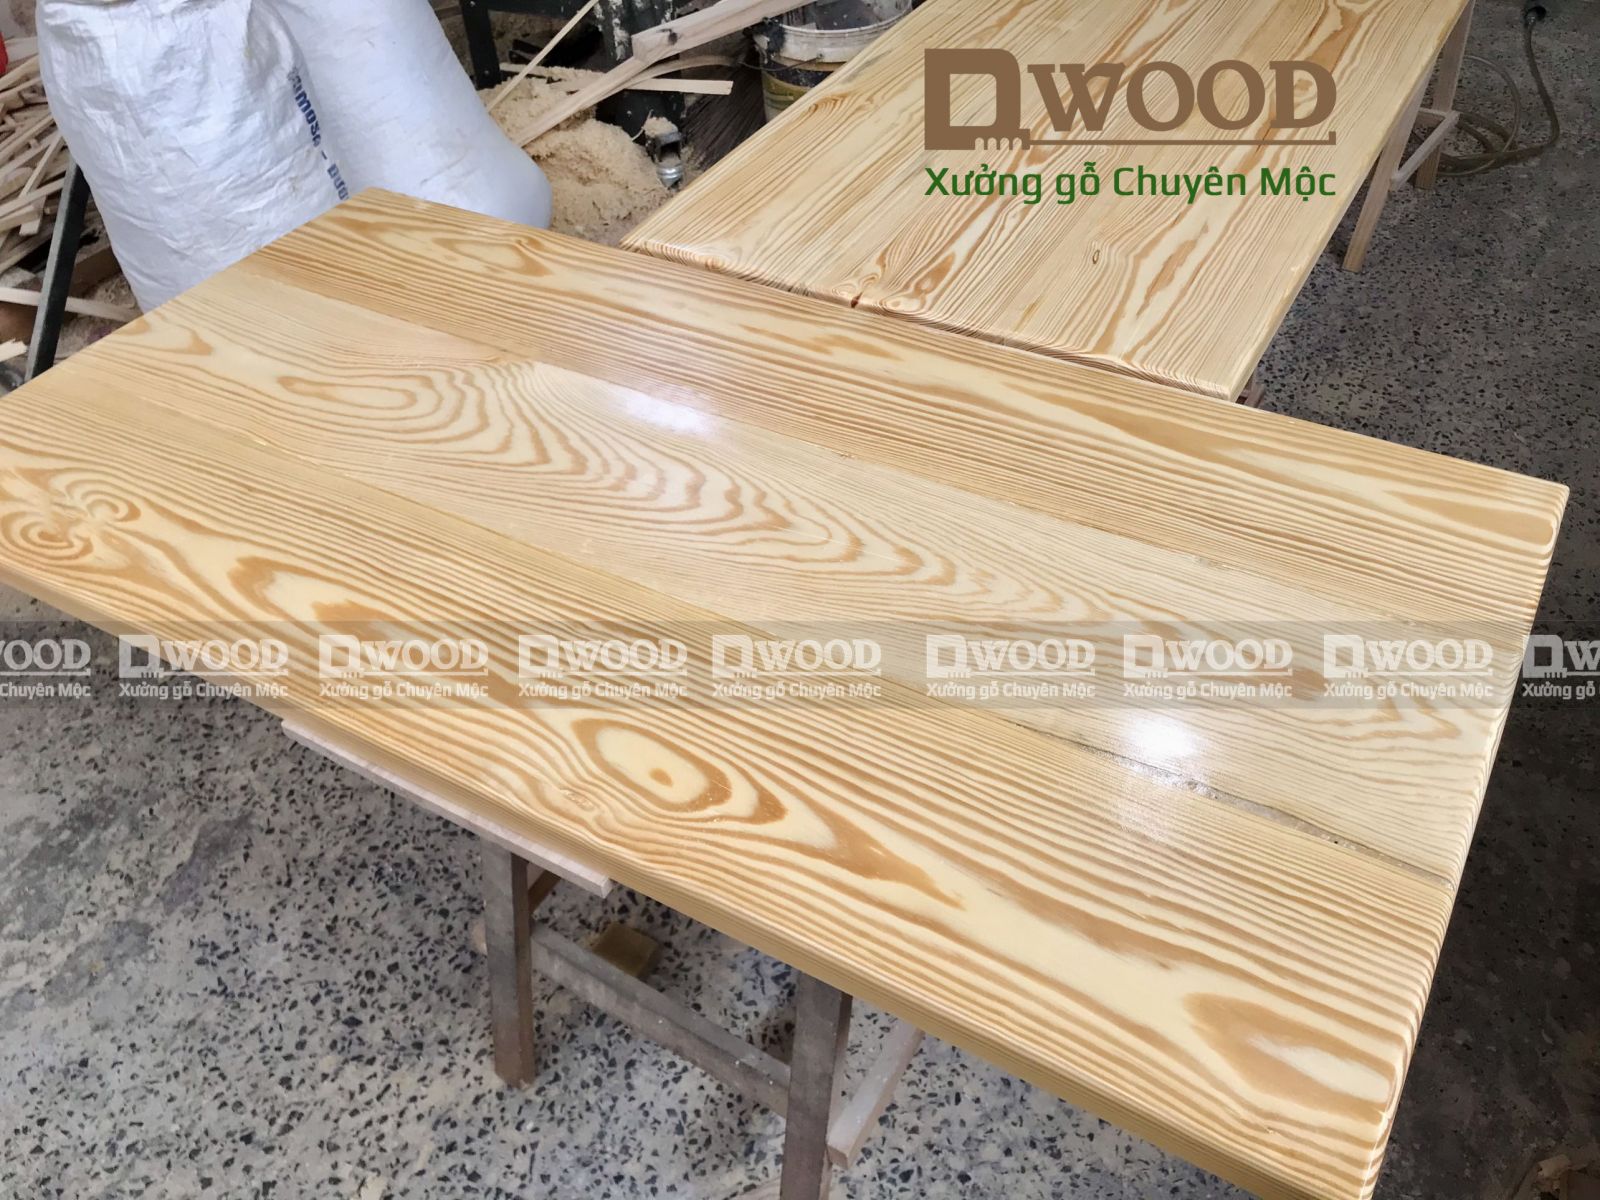 Mặt bàn gỗ thông Dwood kích thước theo yêu cầu 120 x 60 x 3